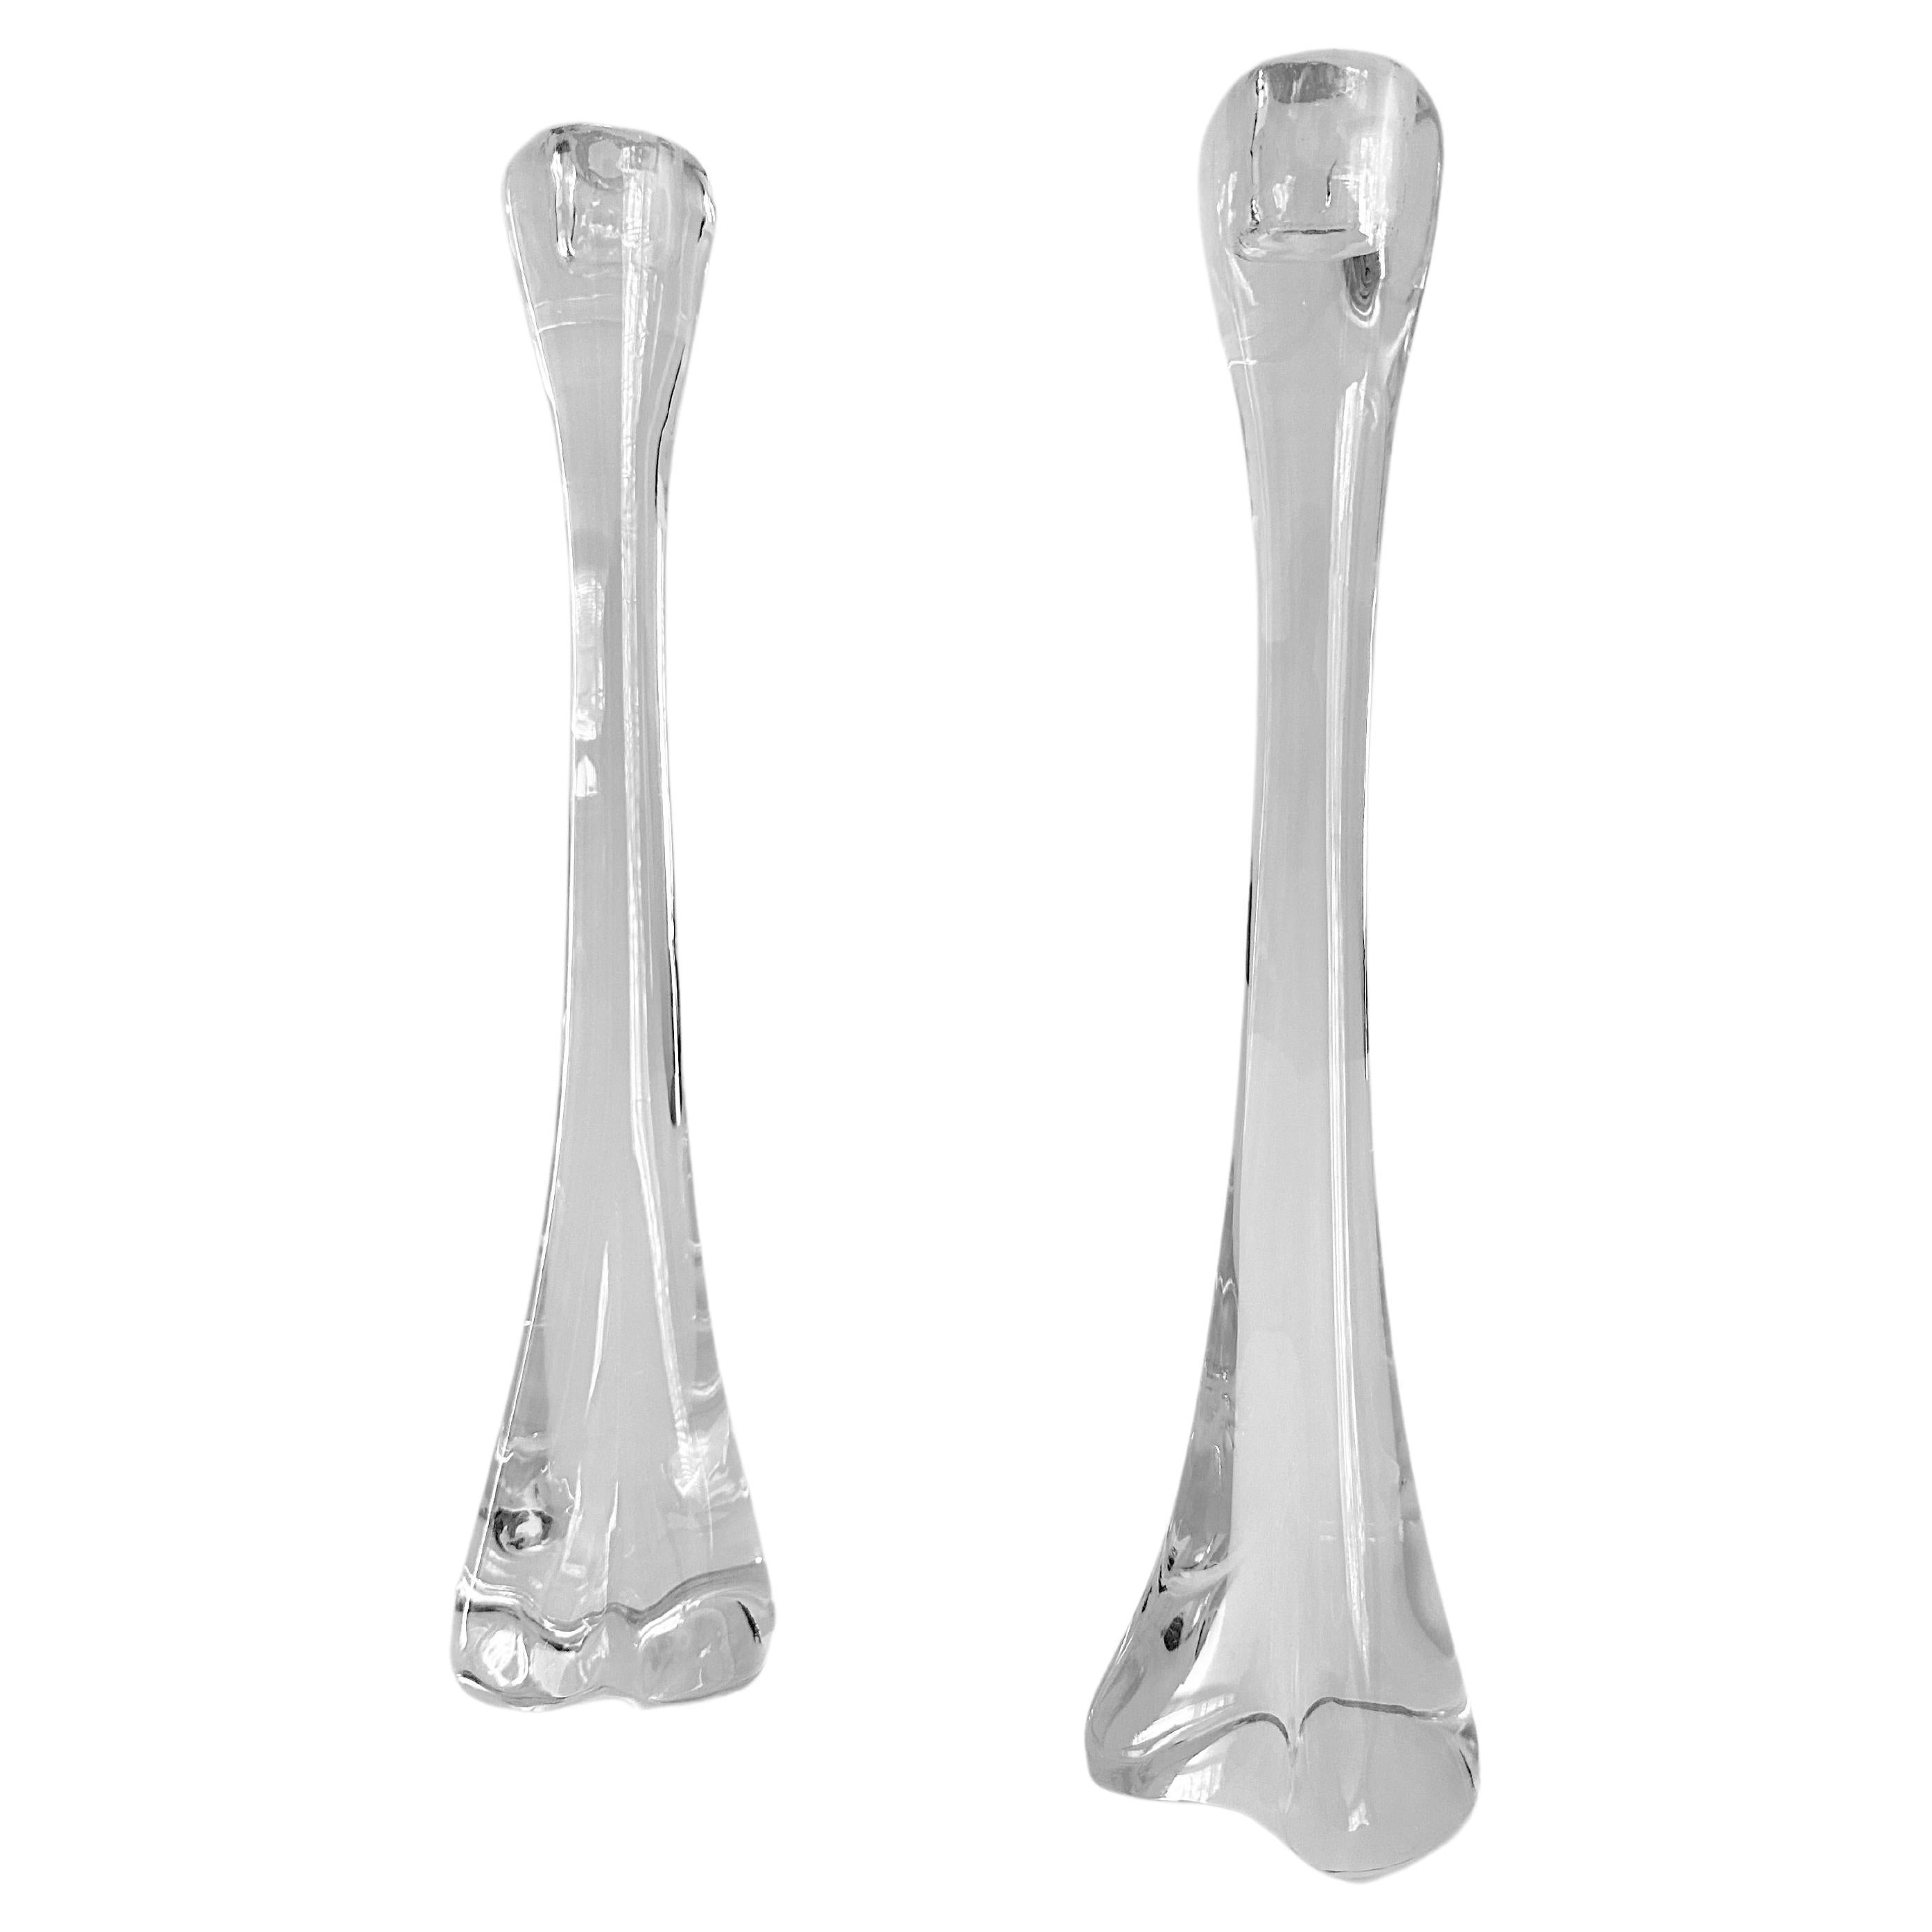 Chandeliers de la série Crystel « Bone » conçus par Elsa Peretti pour Tiffany & Co